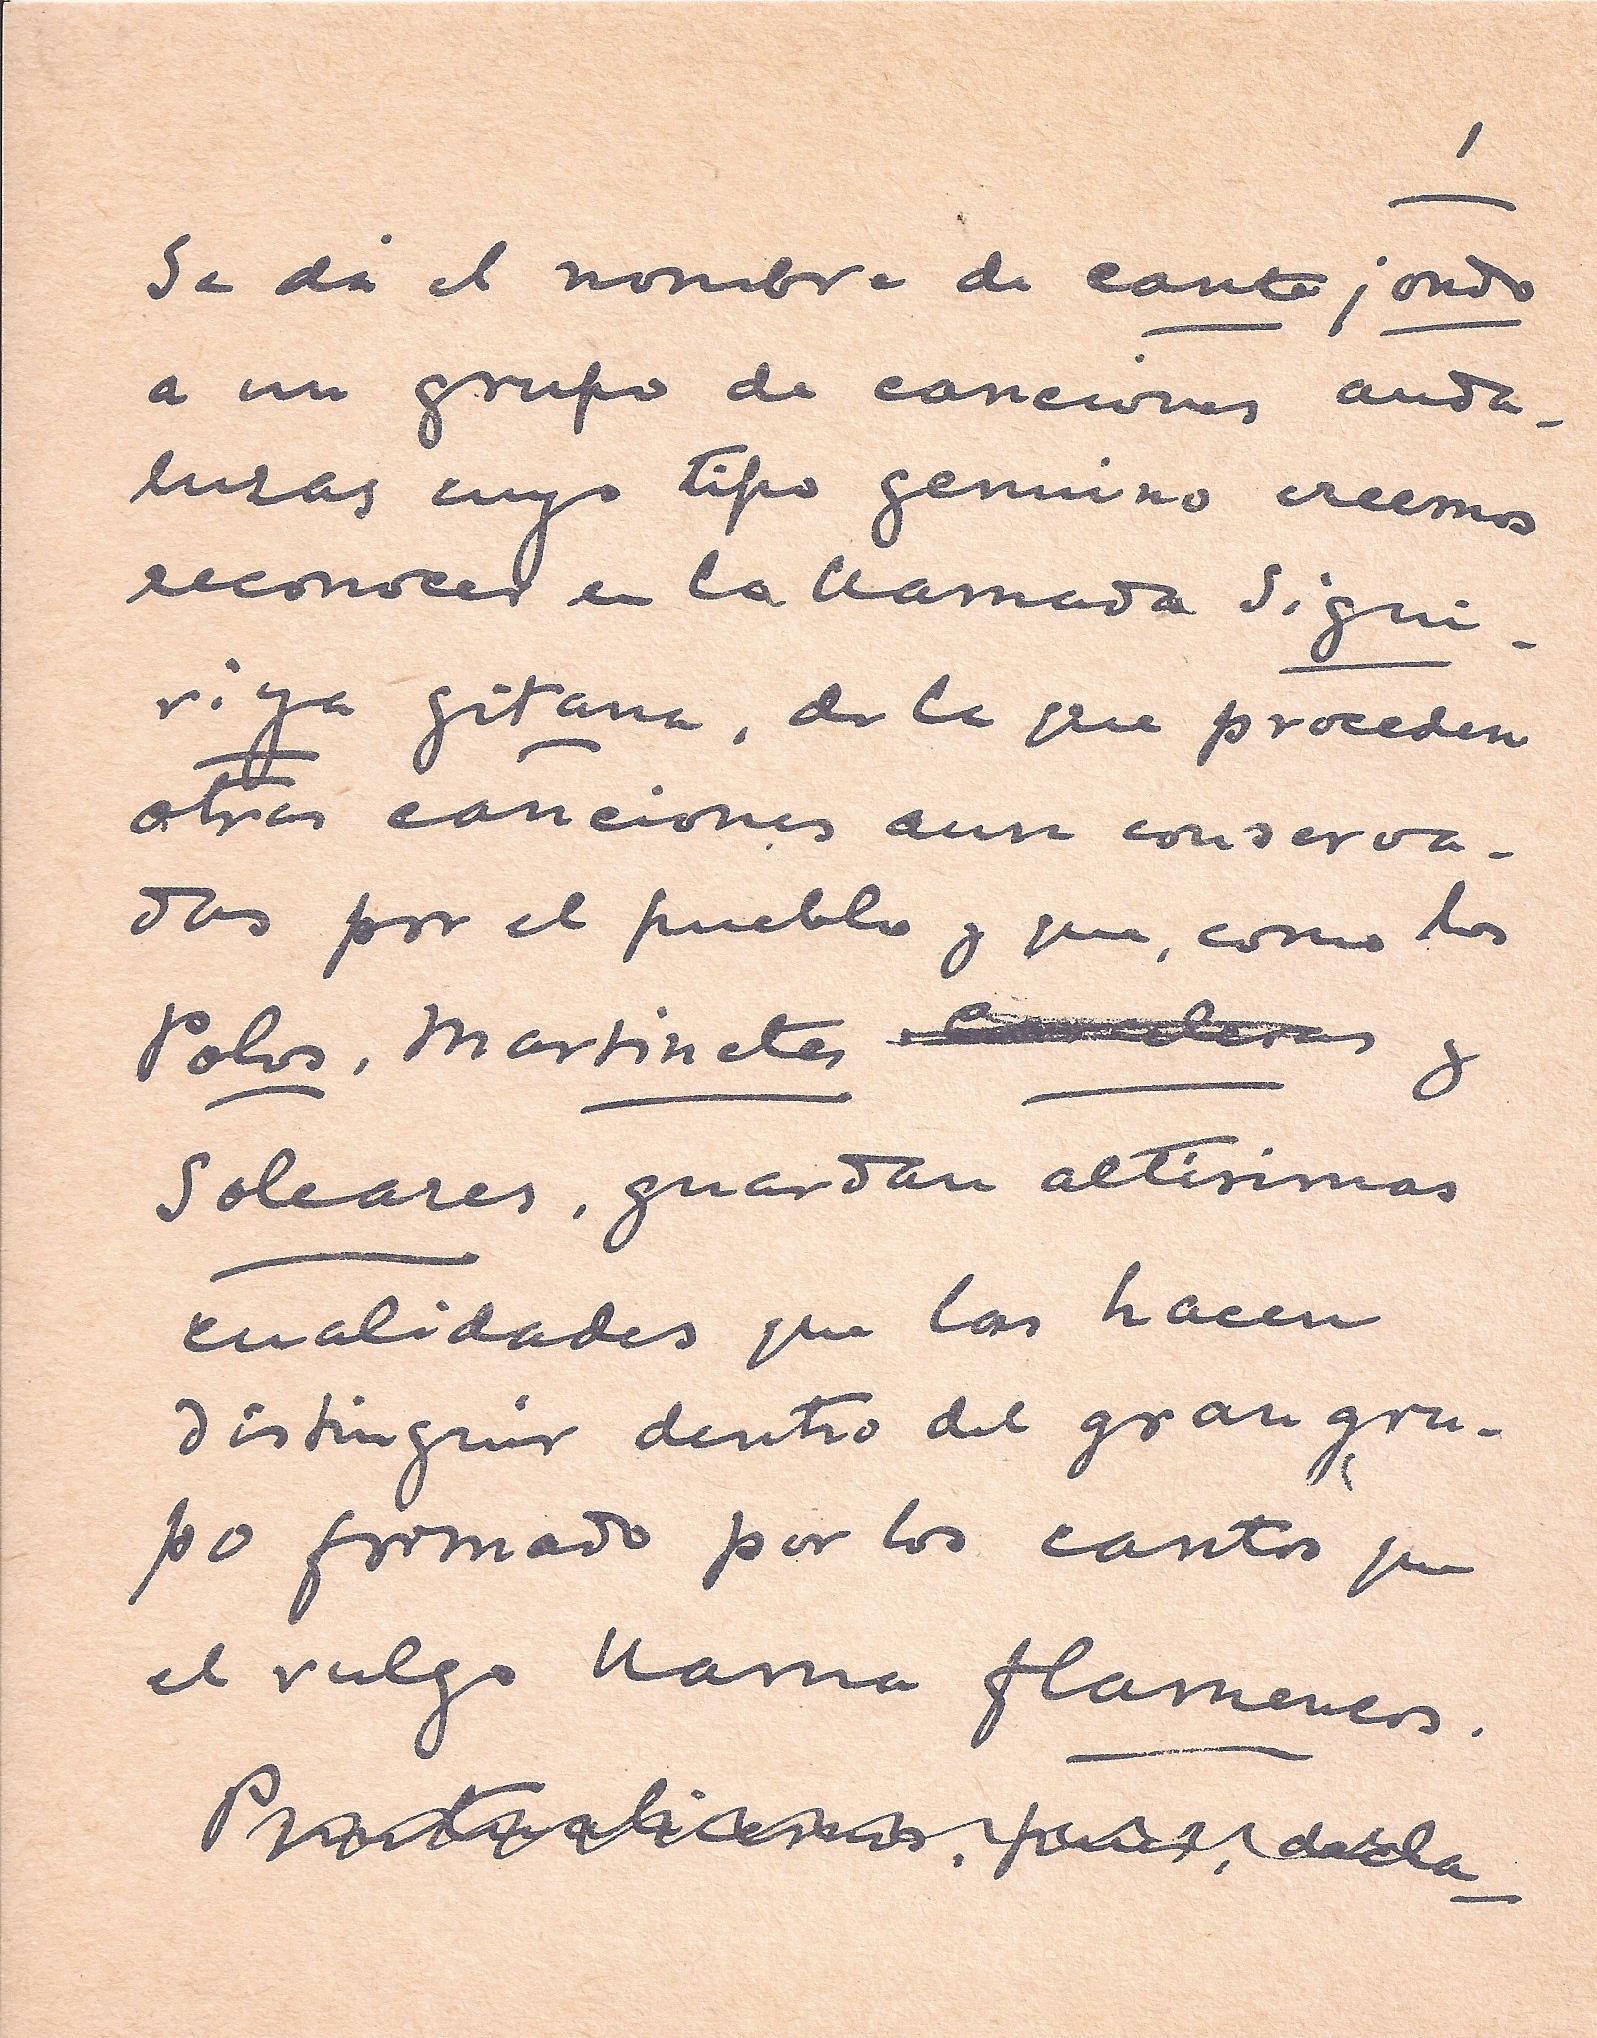 Primera página manuscrita del artículo de Manuel de Falla sobre el Cante Jondo.